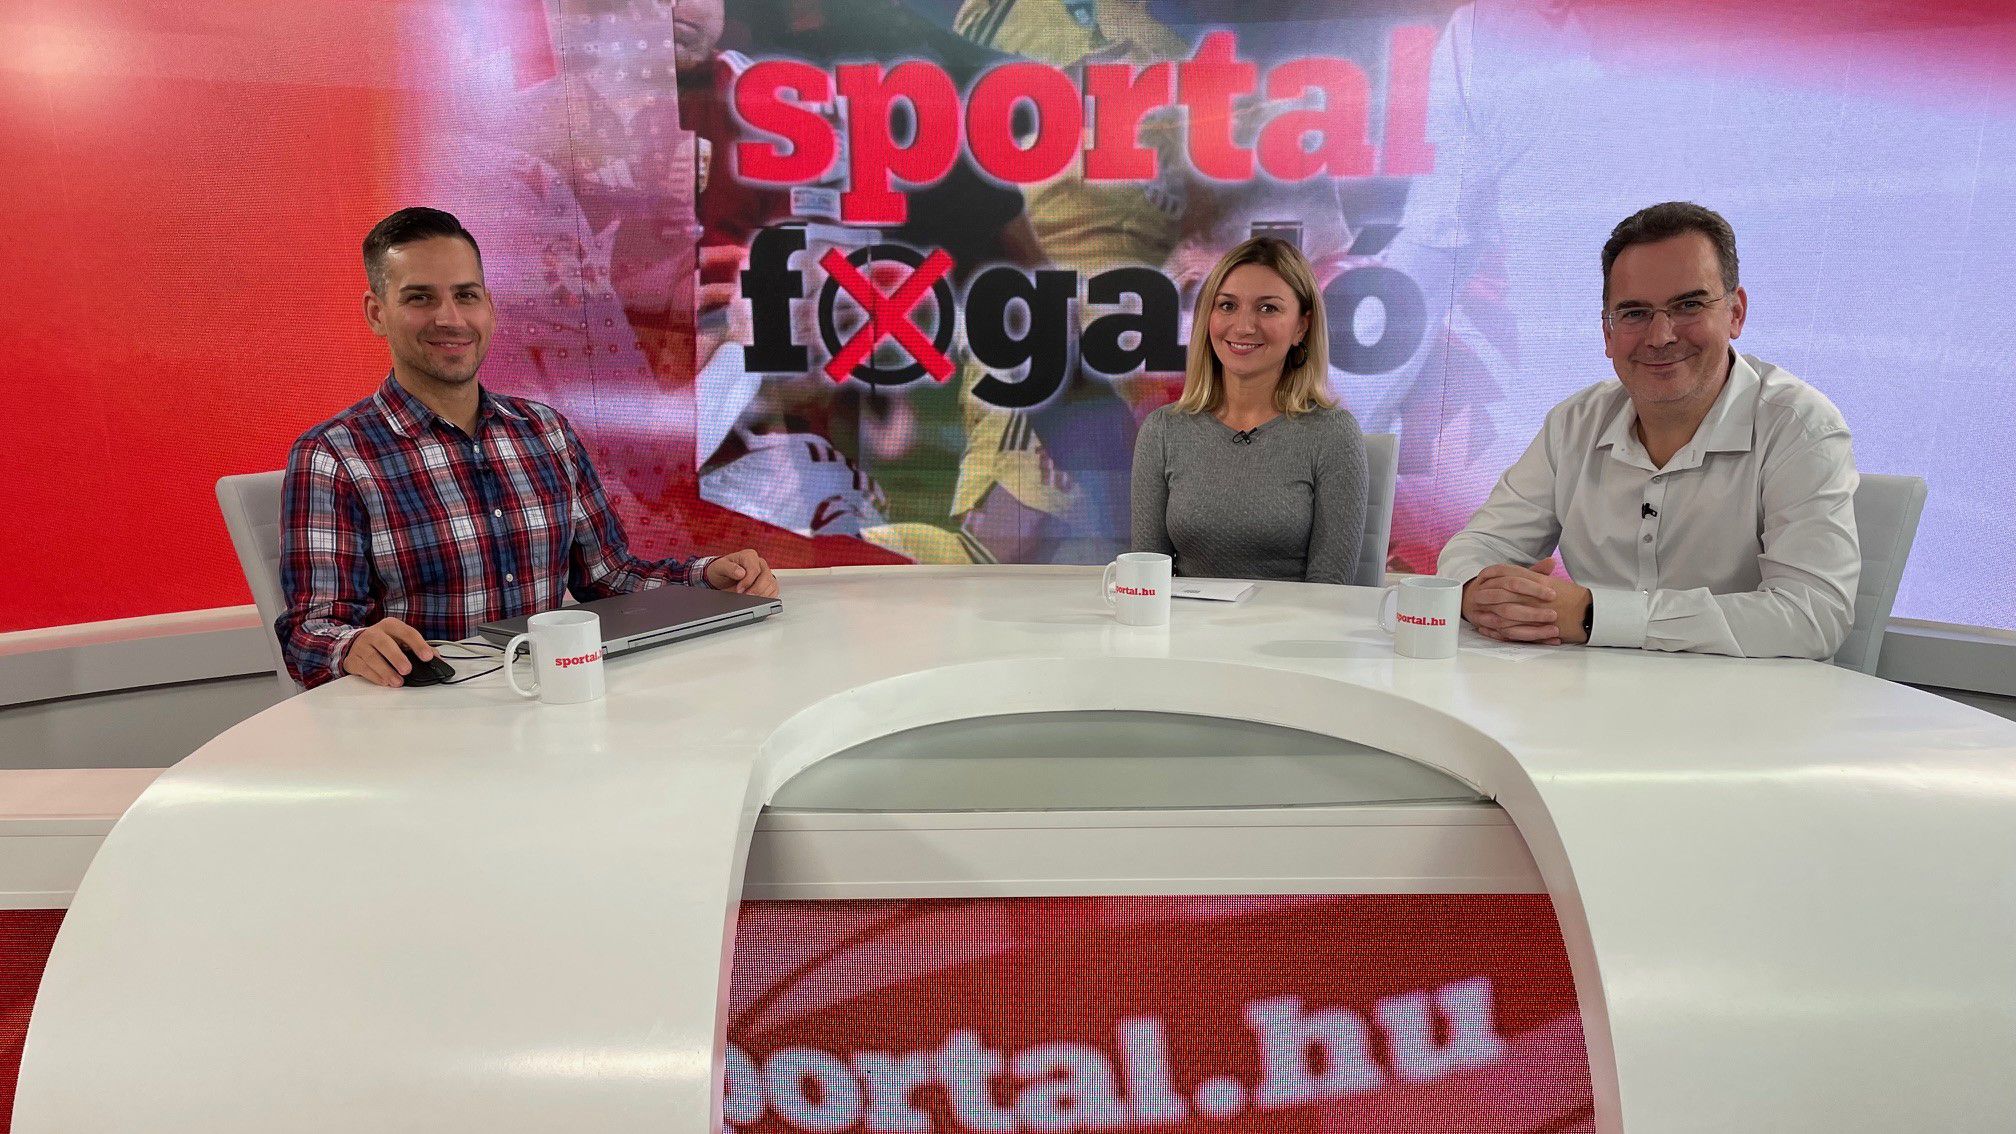 Sportál Fogadó: Győzhet Fehérváron az Újpest?; Melyik NFL-csapat nyer Frankfurtban?; Meglepi a Dortmund a Bayernt otthon?